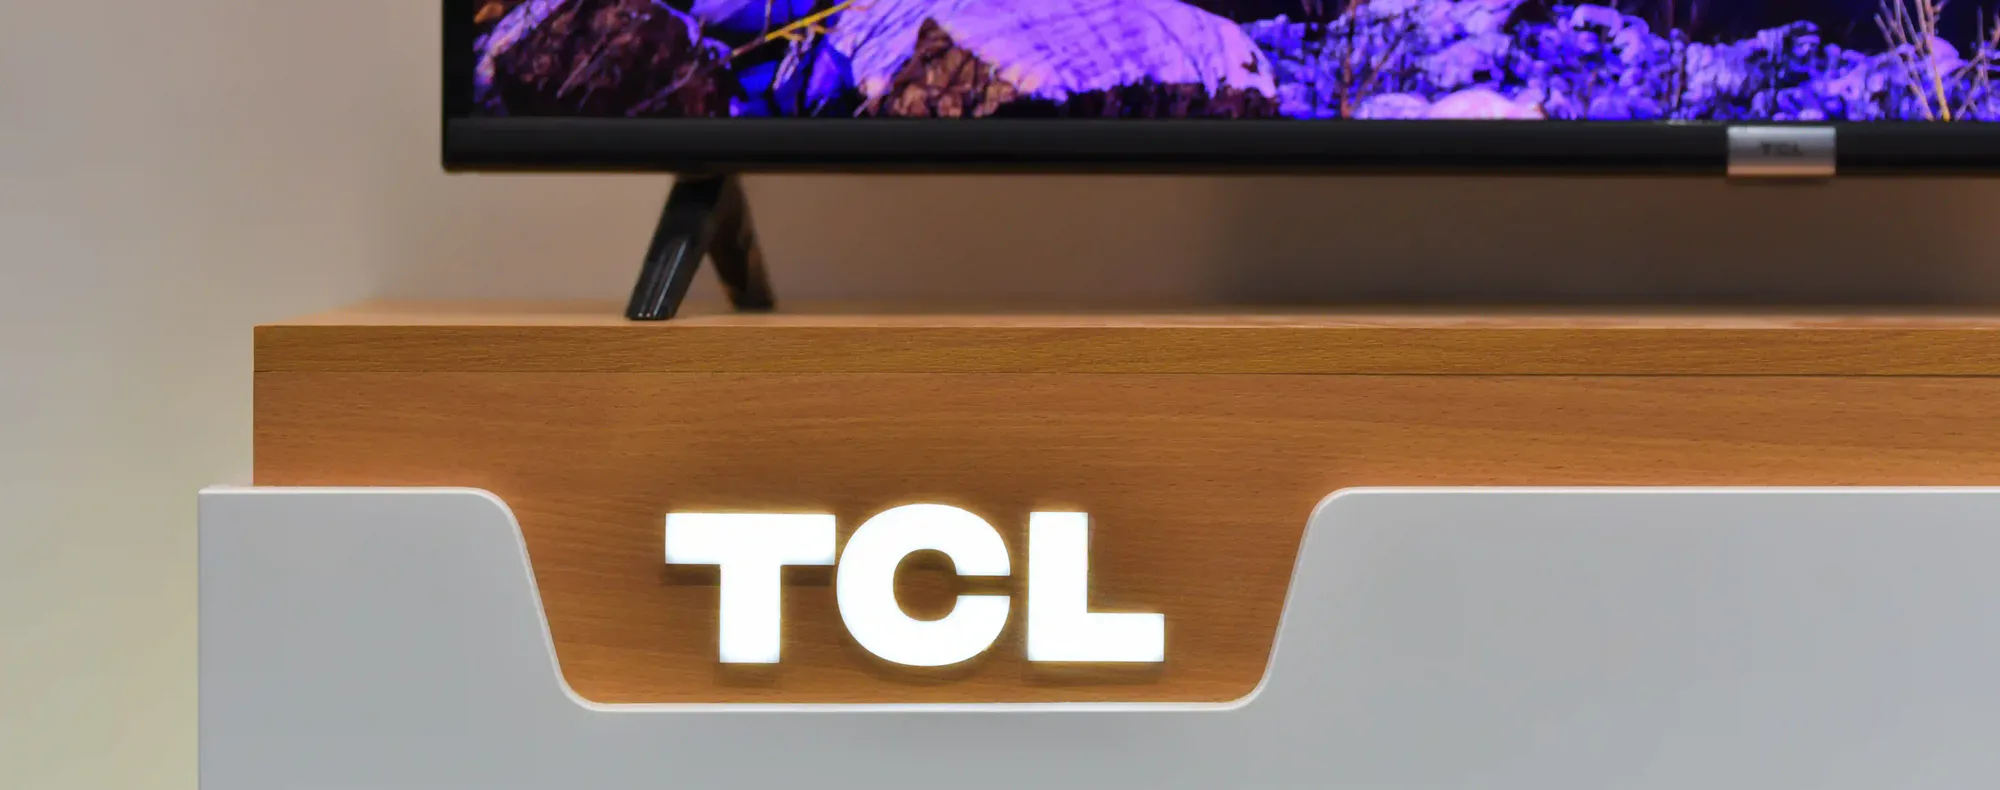 Capa do post: TV TCL é boa? Descubra se os modelos da marca valem a pena